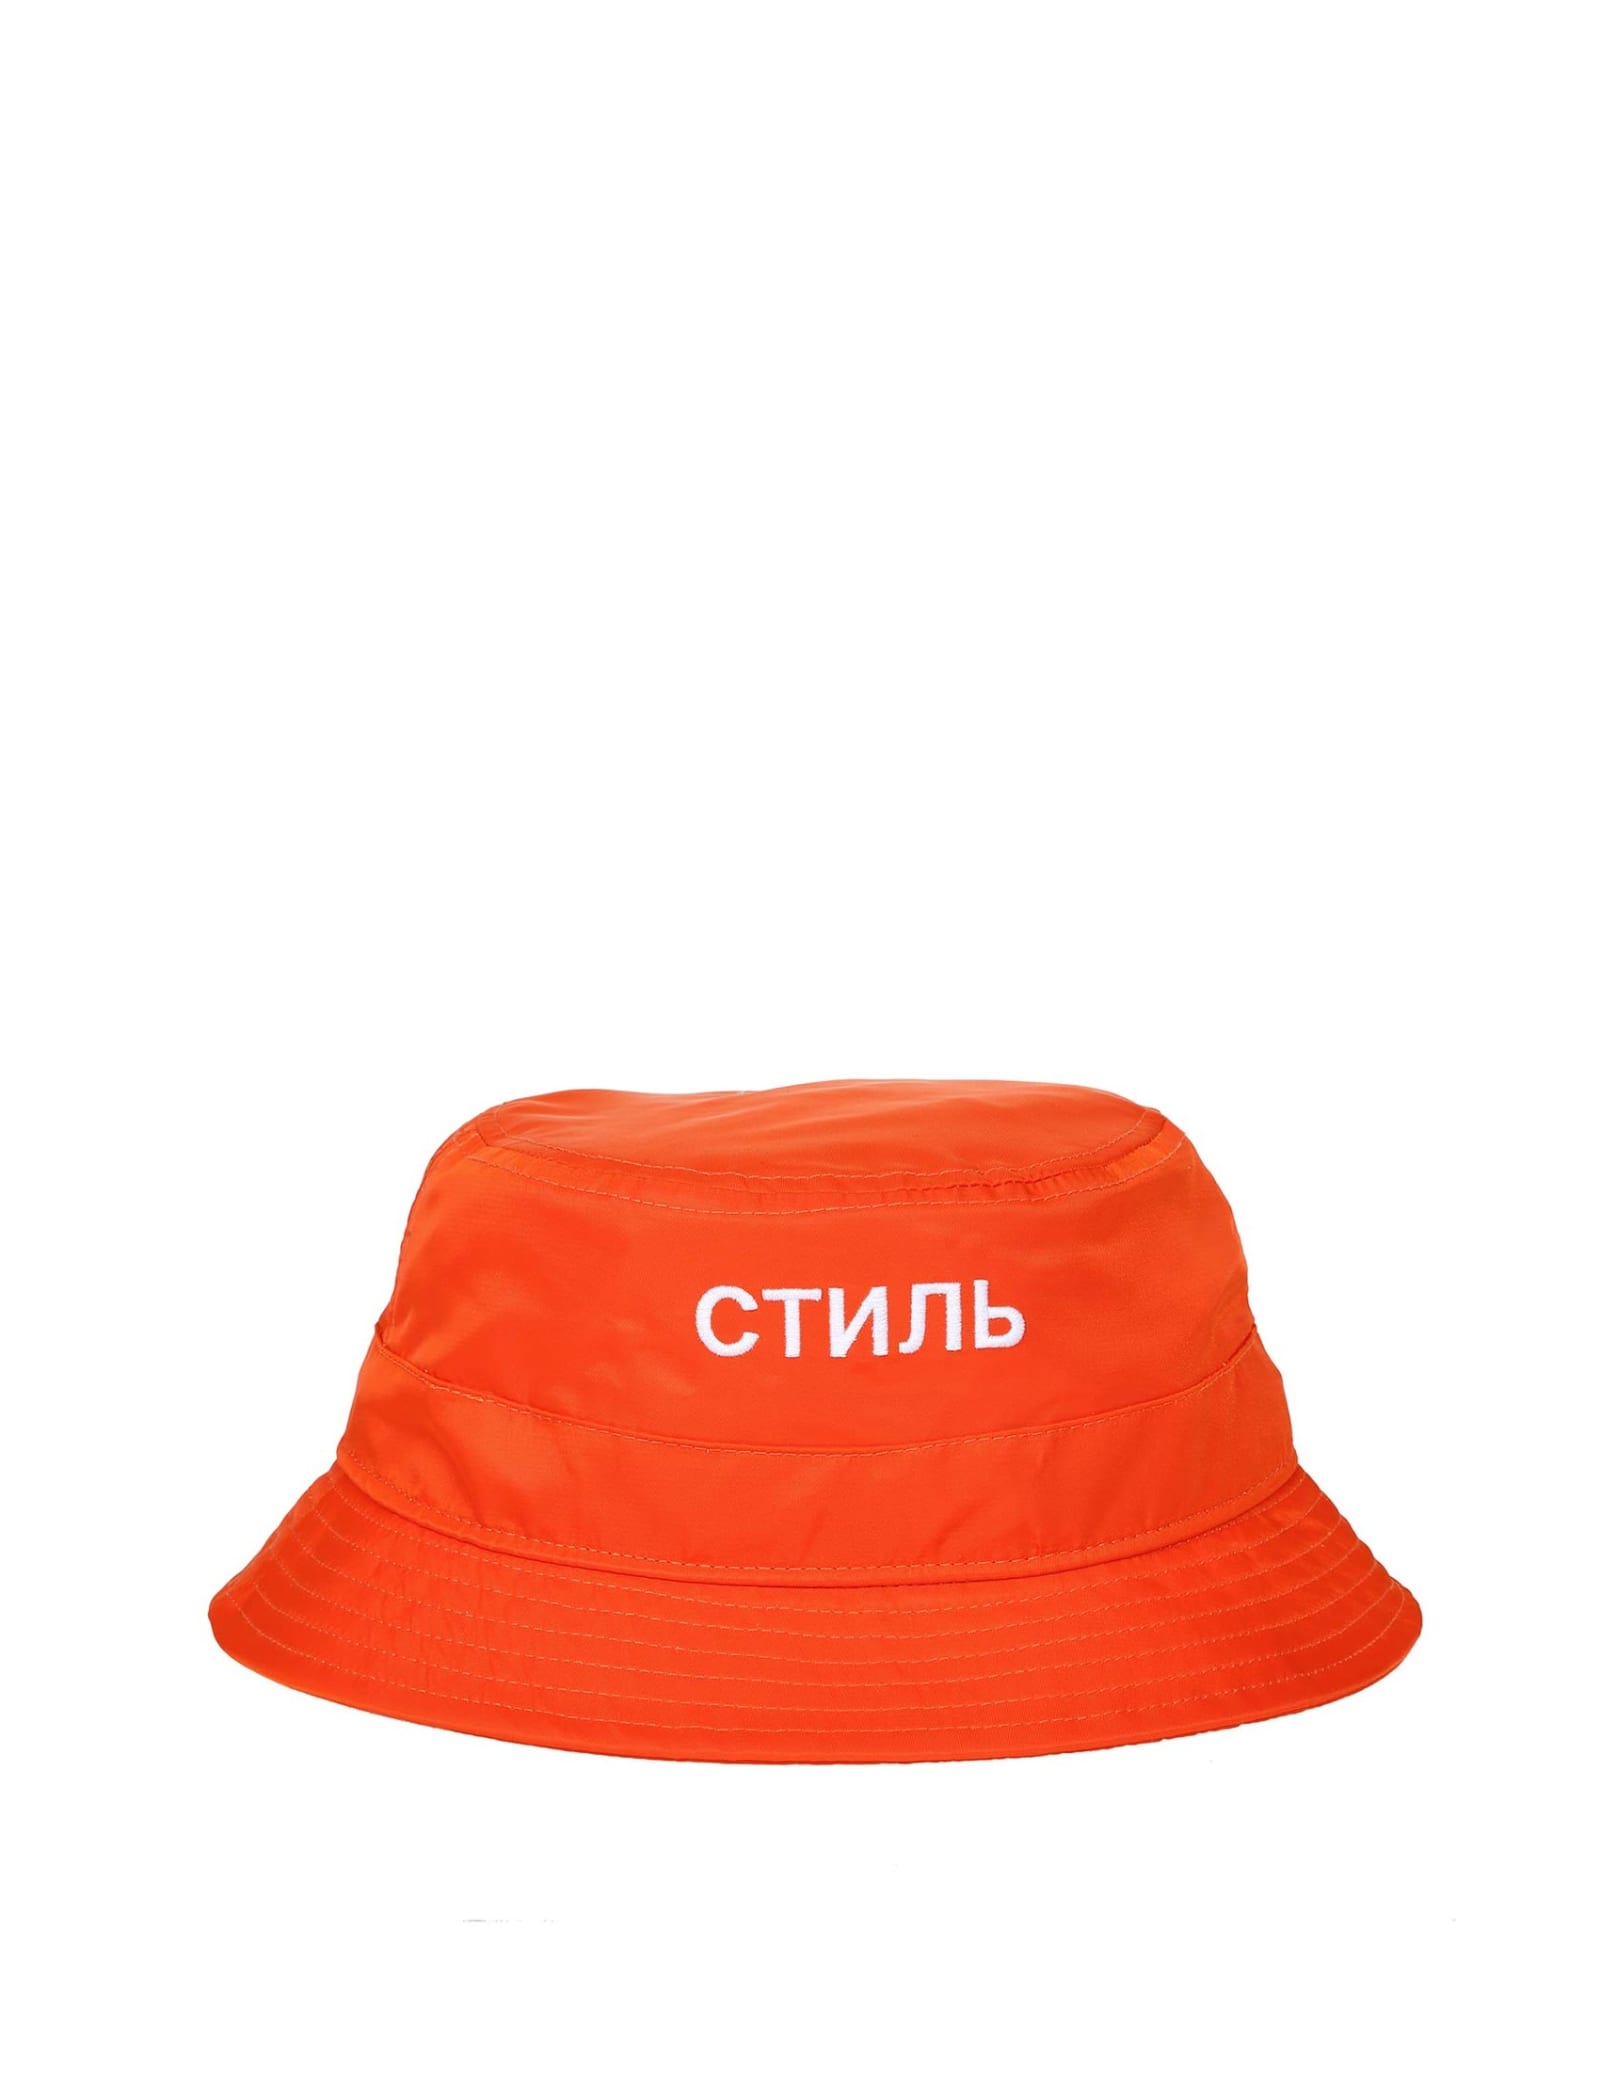 HERON PRESTON Ctnmb Bucket Hat Color Orange